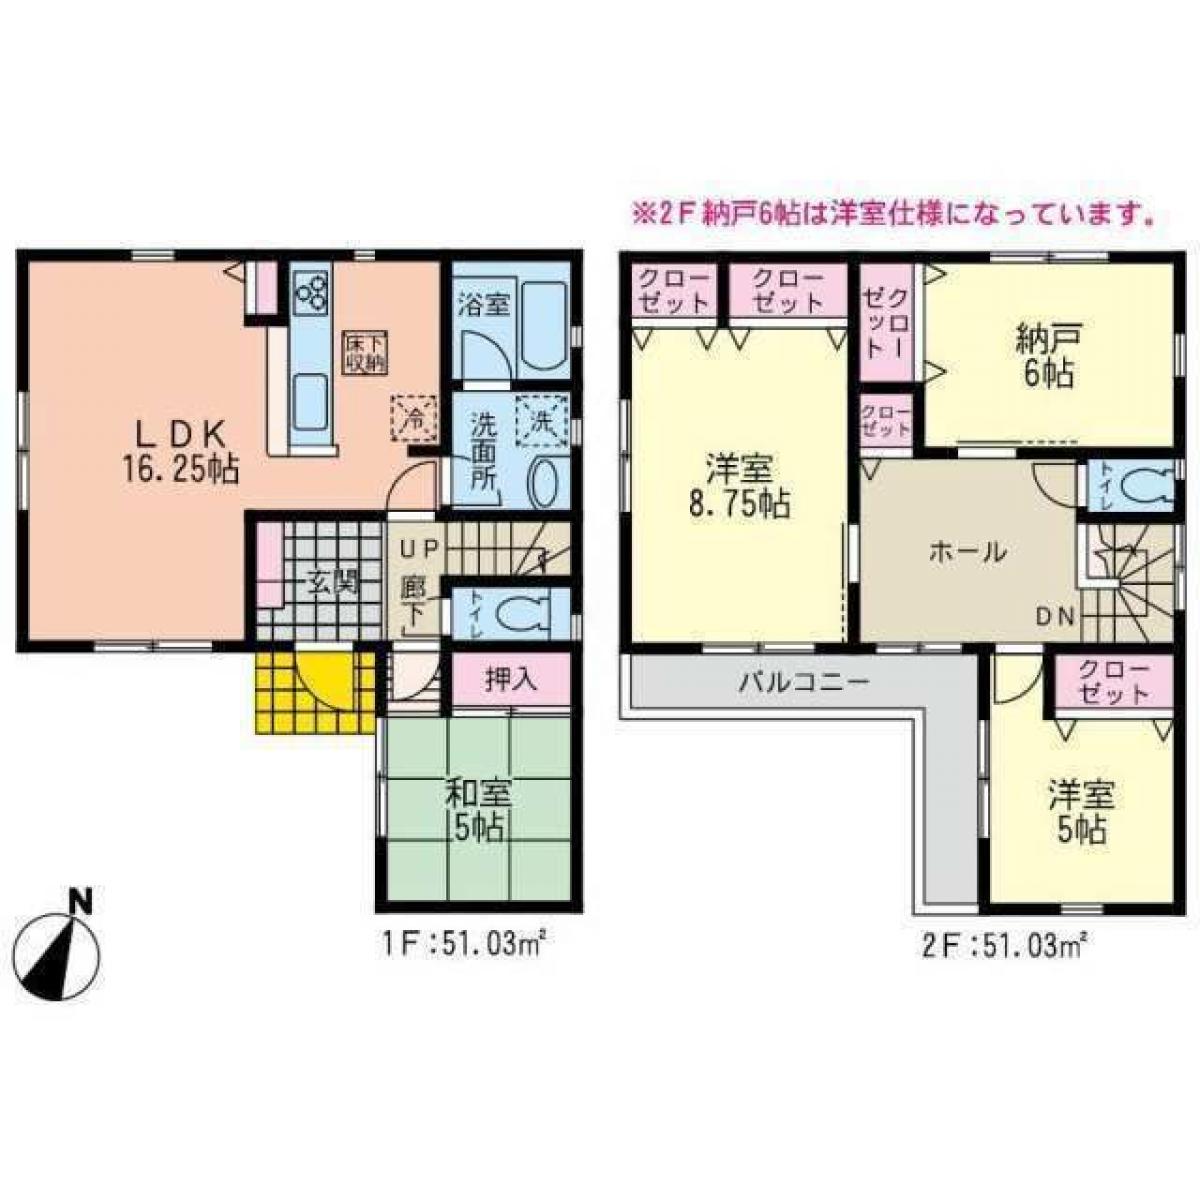 Picture of Home For Sale in Aiko Gun Aikawa Machi, Kanagawa, Japan